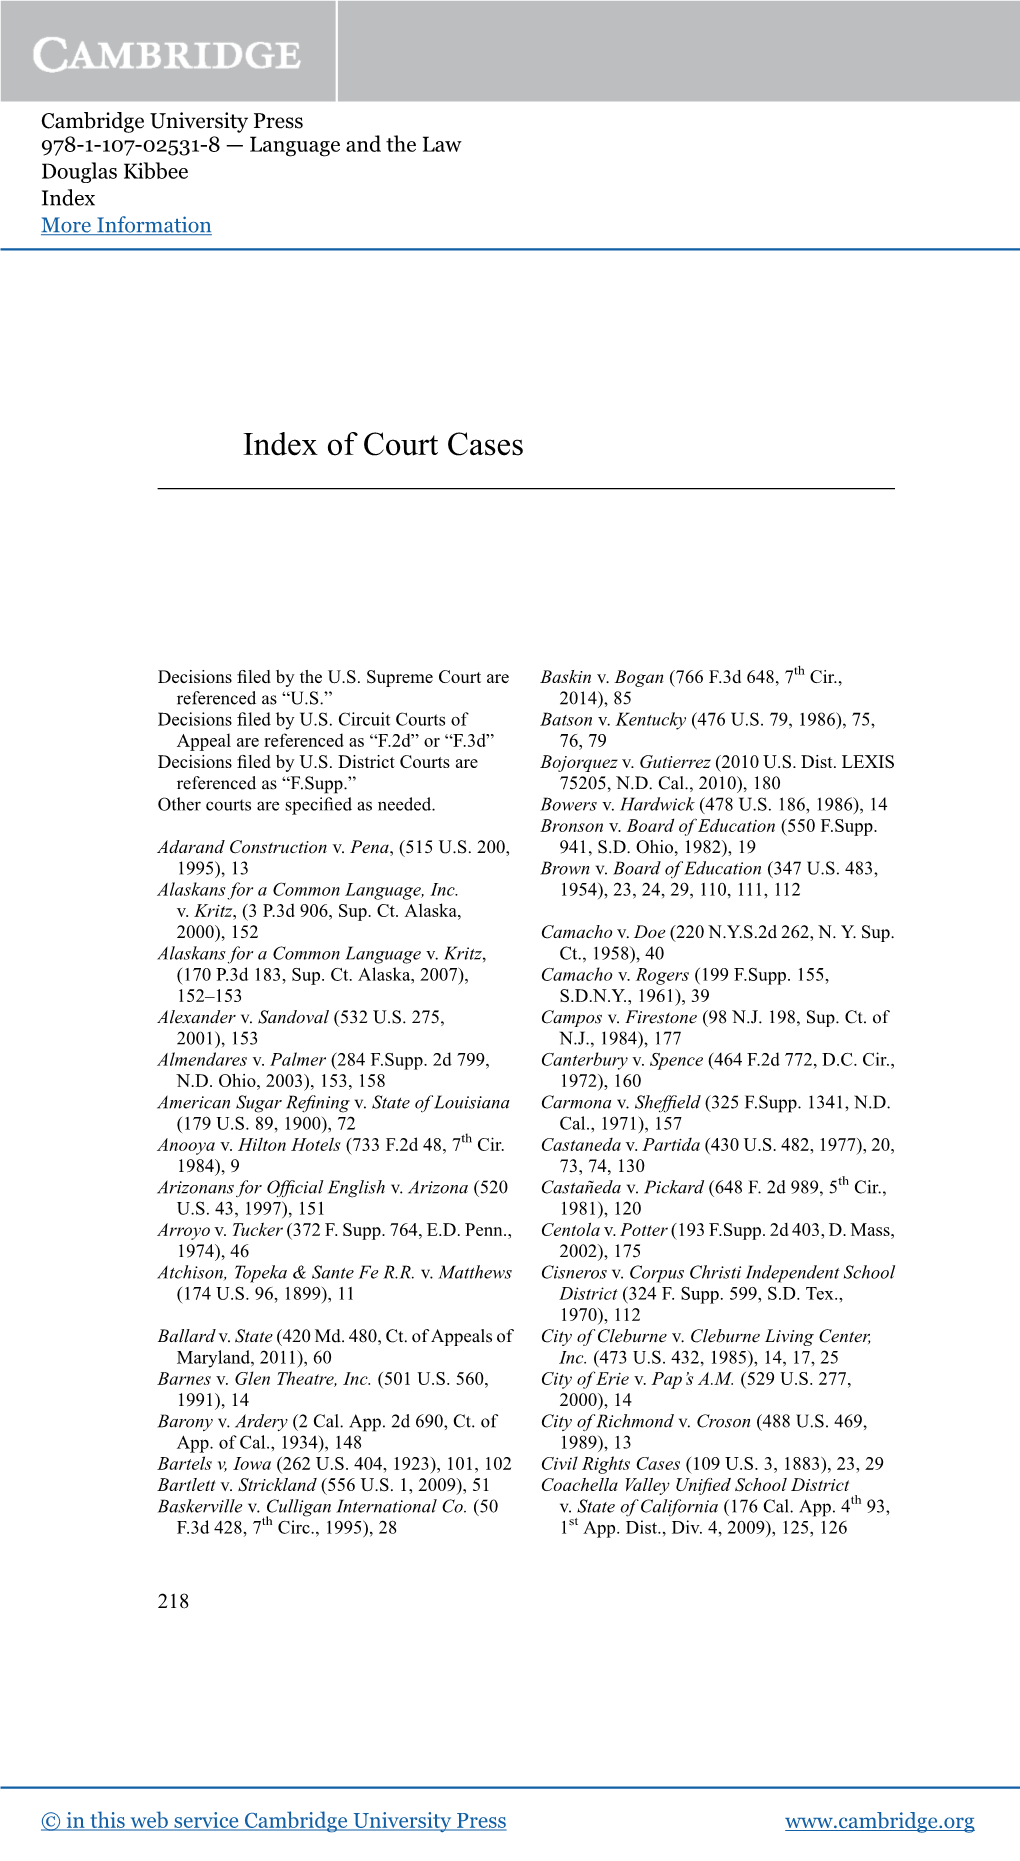 Index of Court Cases